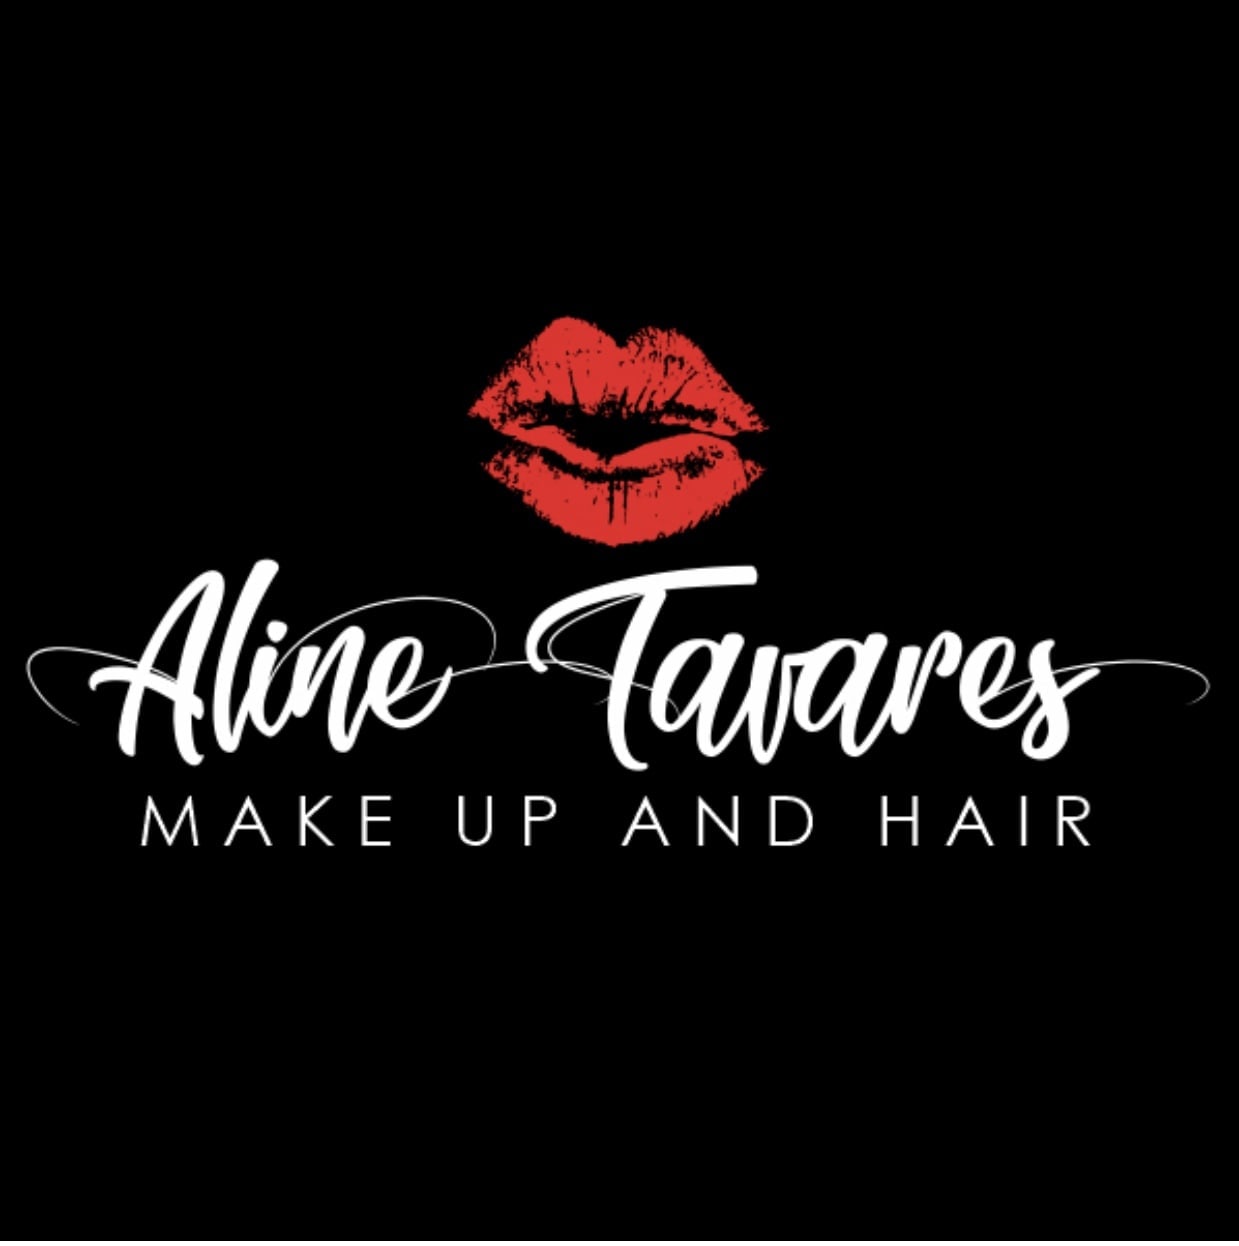 A Tavares Make up Hair